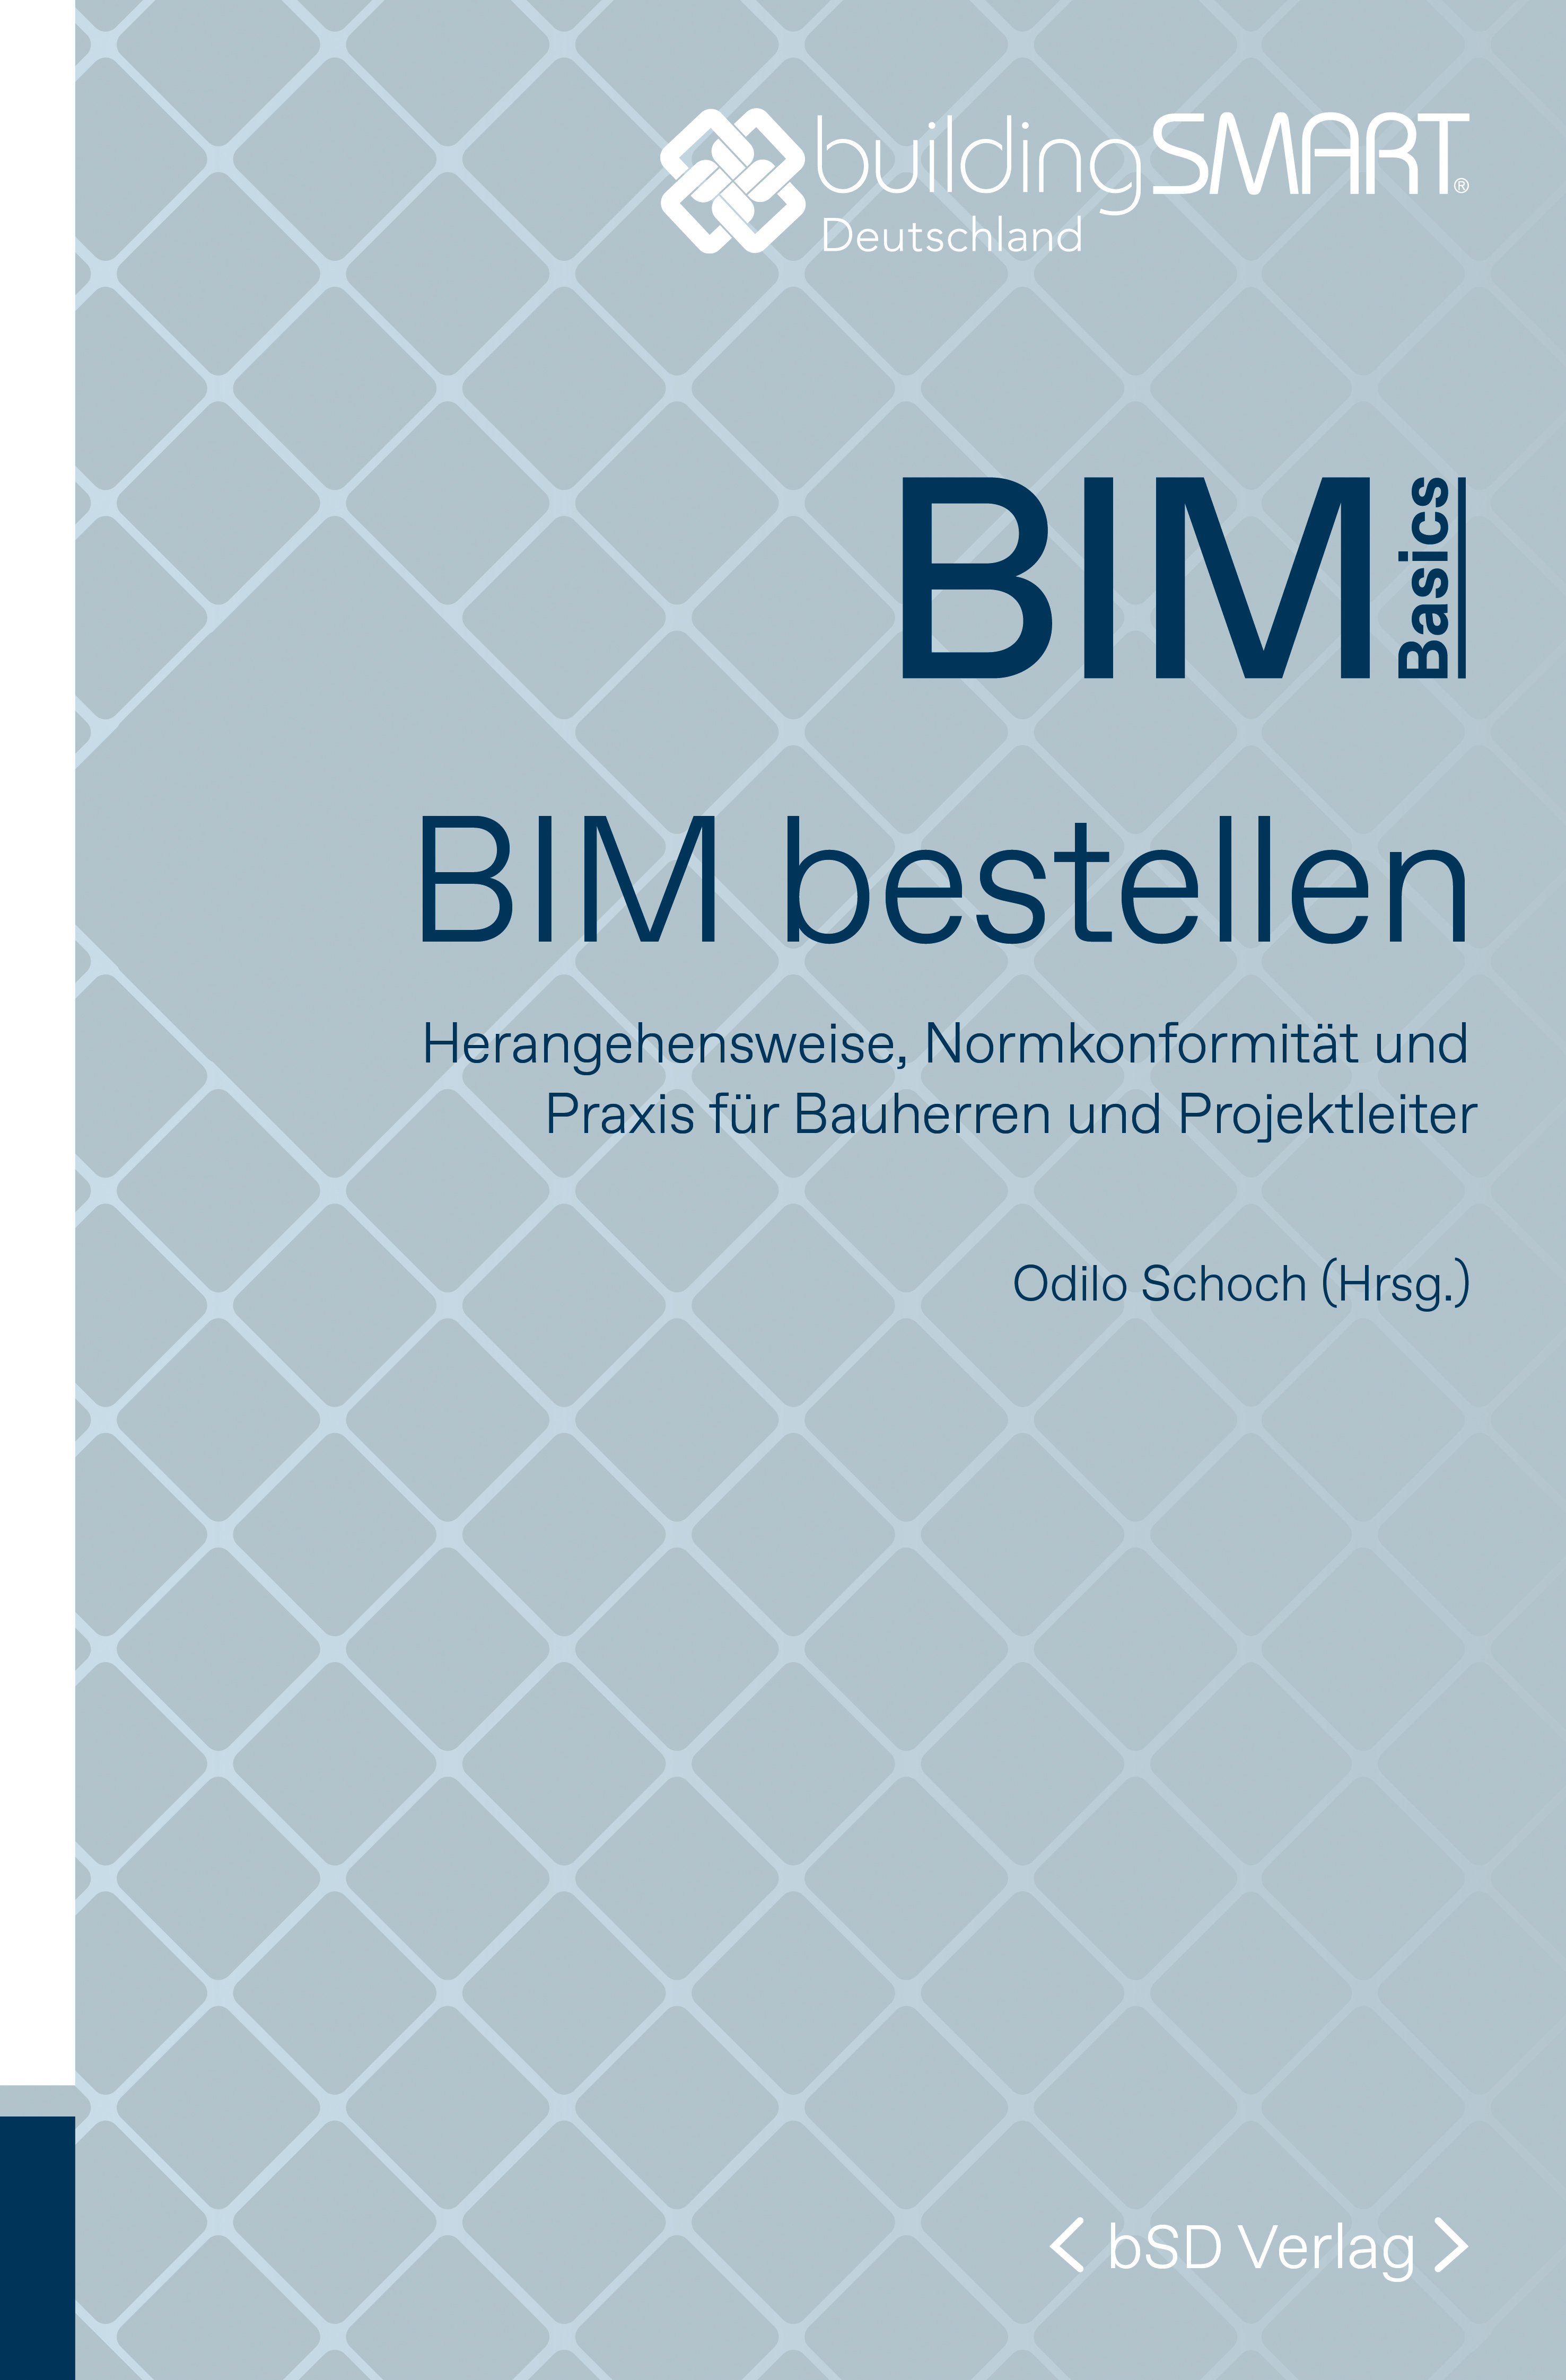 bSD Verlag/BIM Basics: BIM bestellen